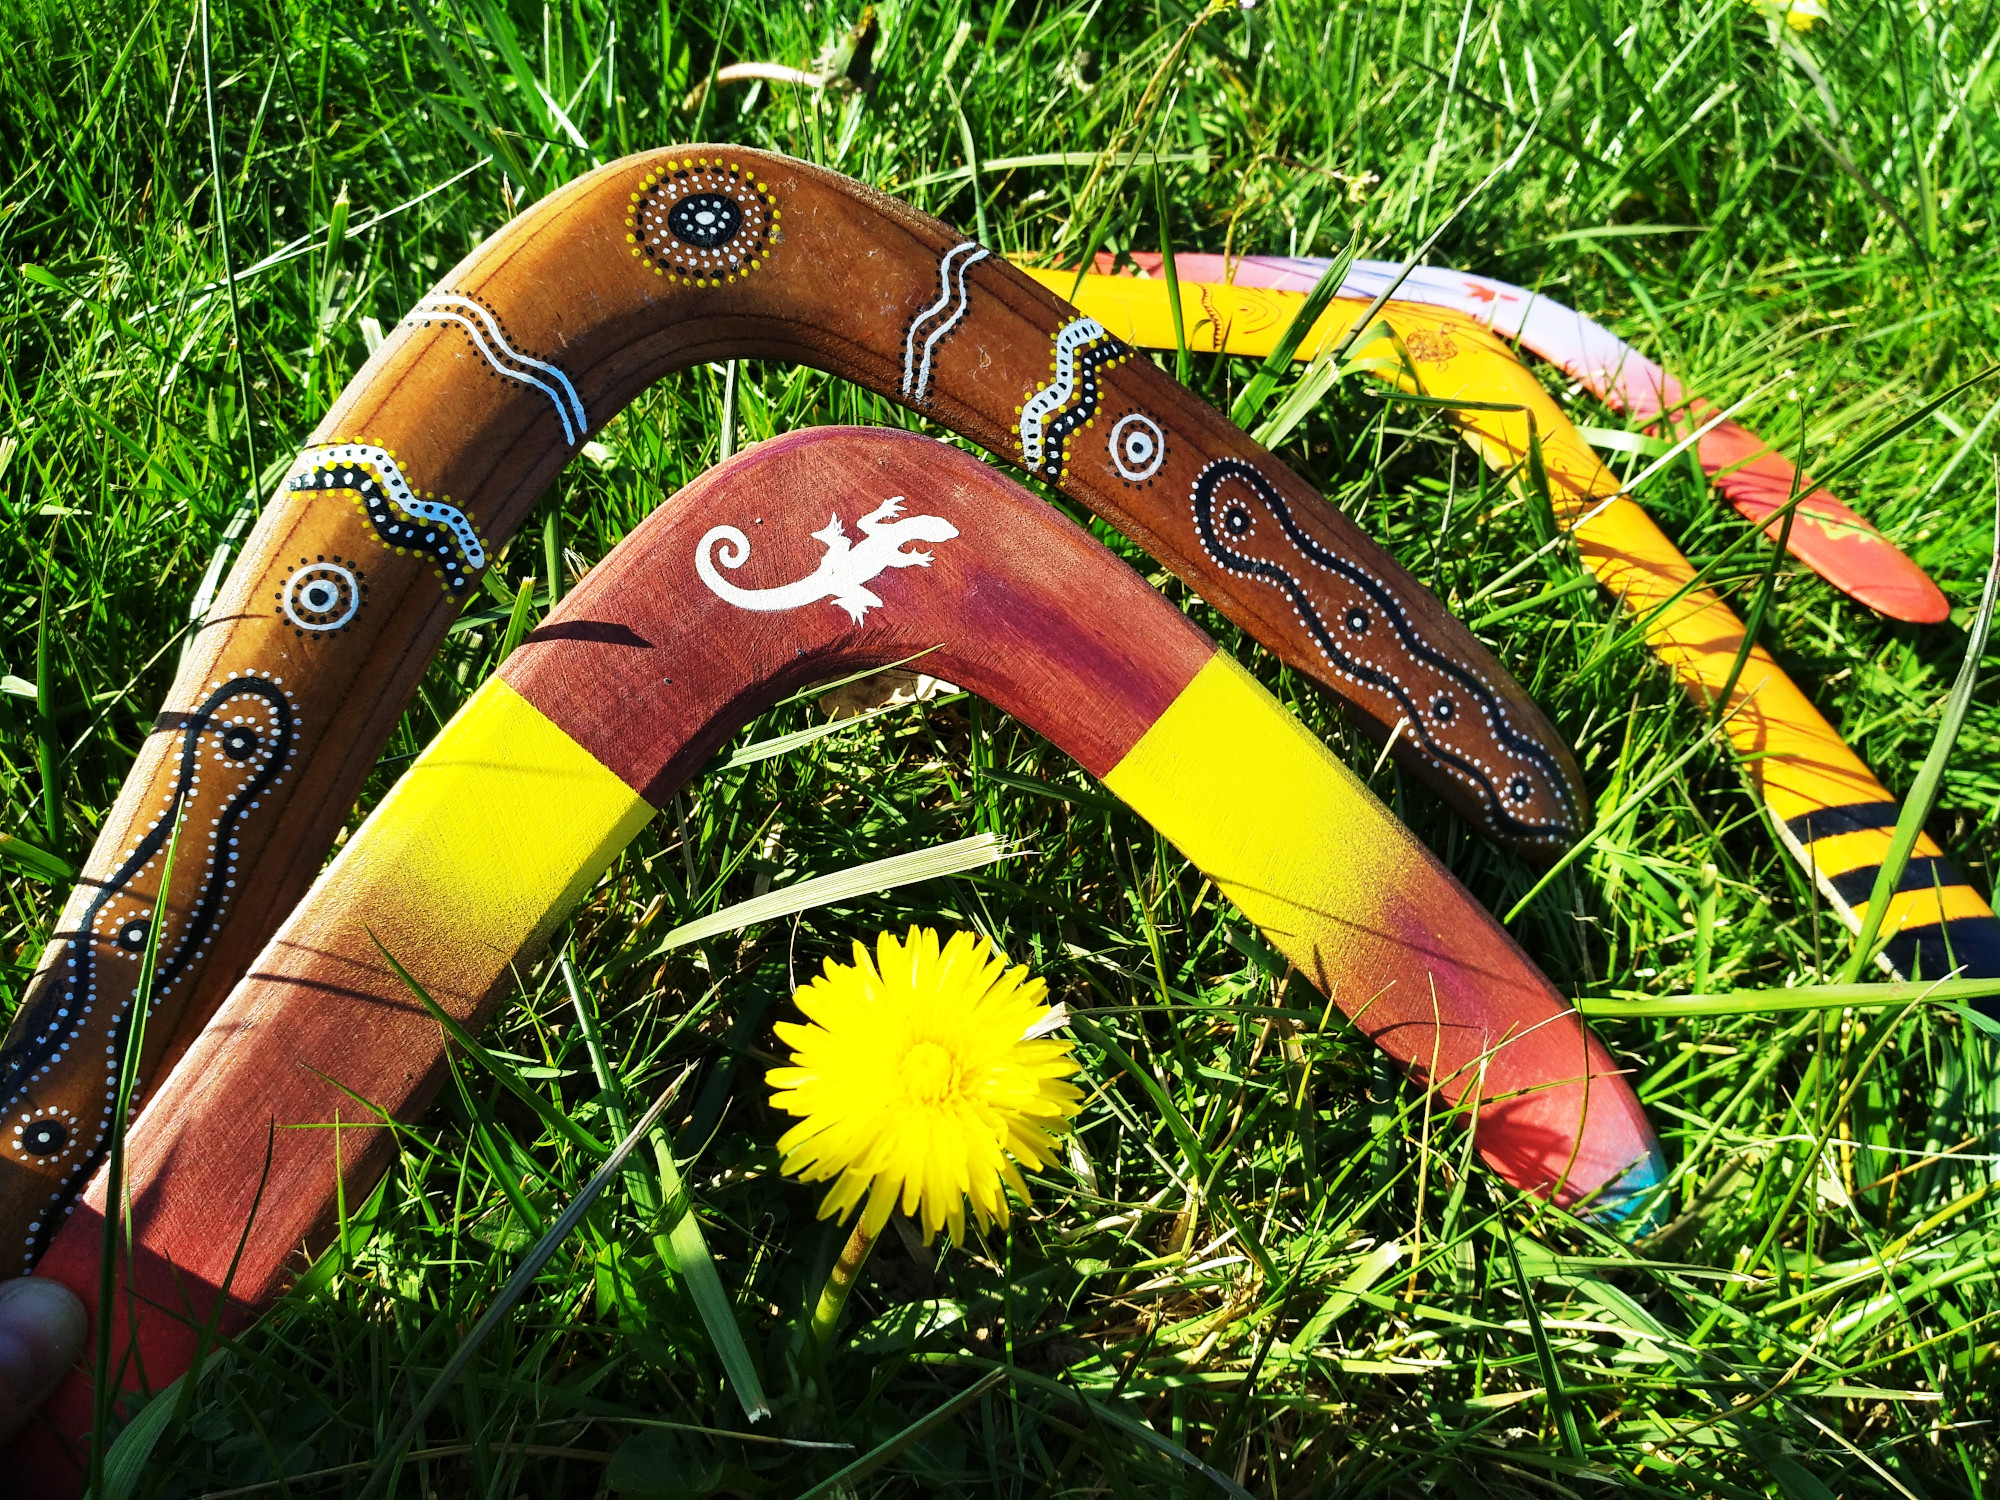 Ideal regalo boda Boomerang de madera regalo y decoración Deporte ocio ZURDO regalo cumpleaños. para niños y adultos